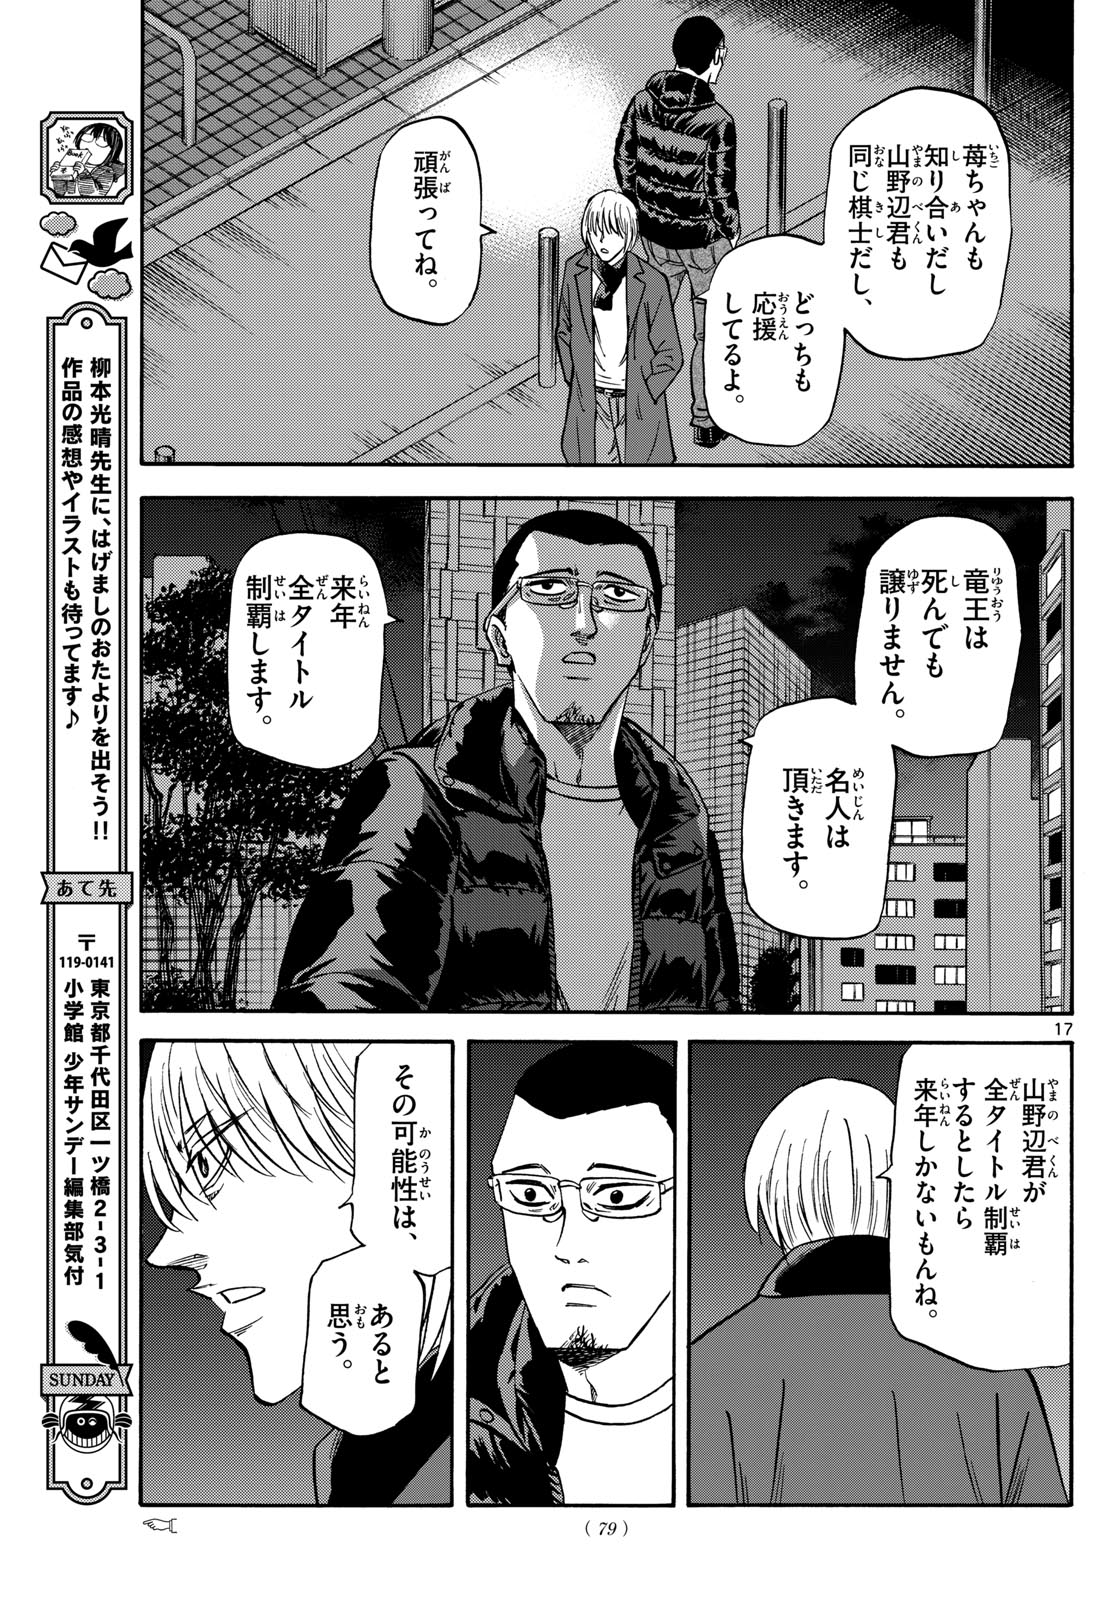 Tatsu to Ichigo - Chapter 171 - Page 17